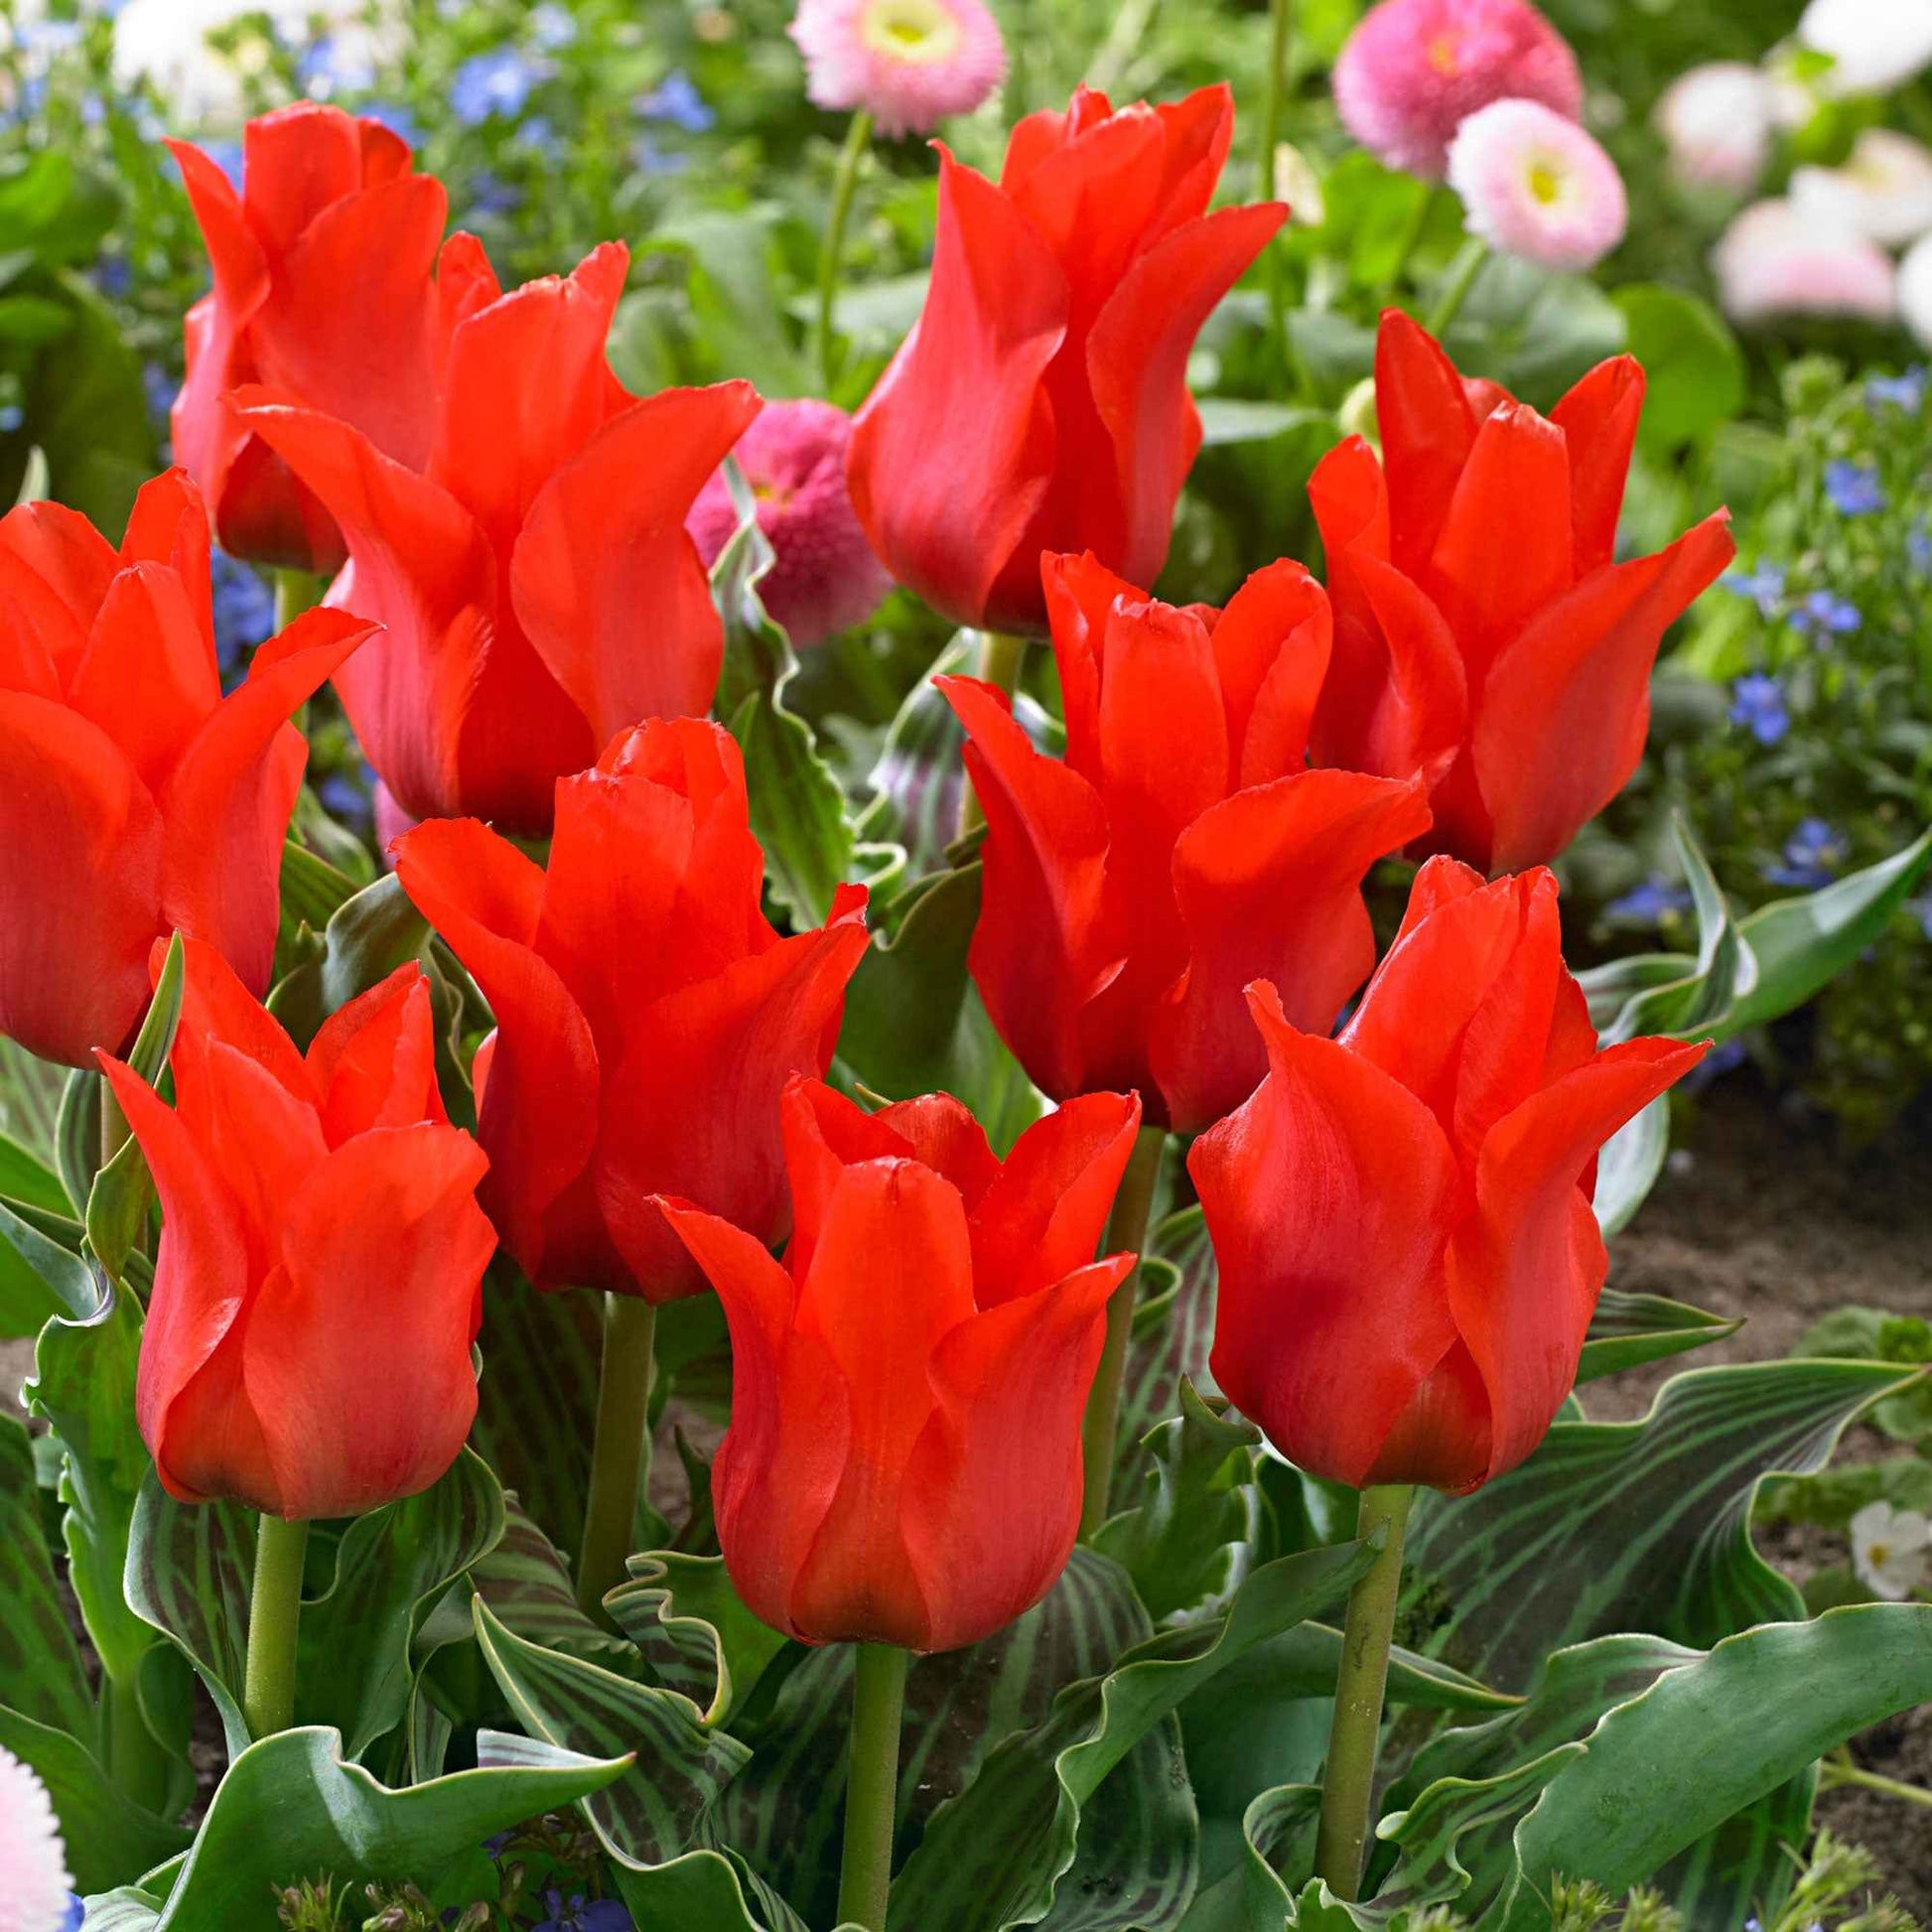 20x Tulpen Tulipa Oriental Beauty rood - Alle bloembollen